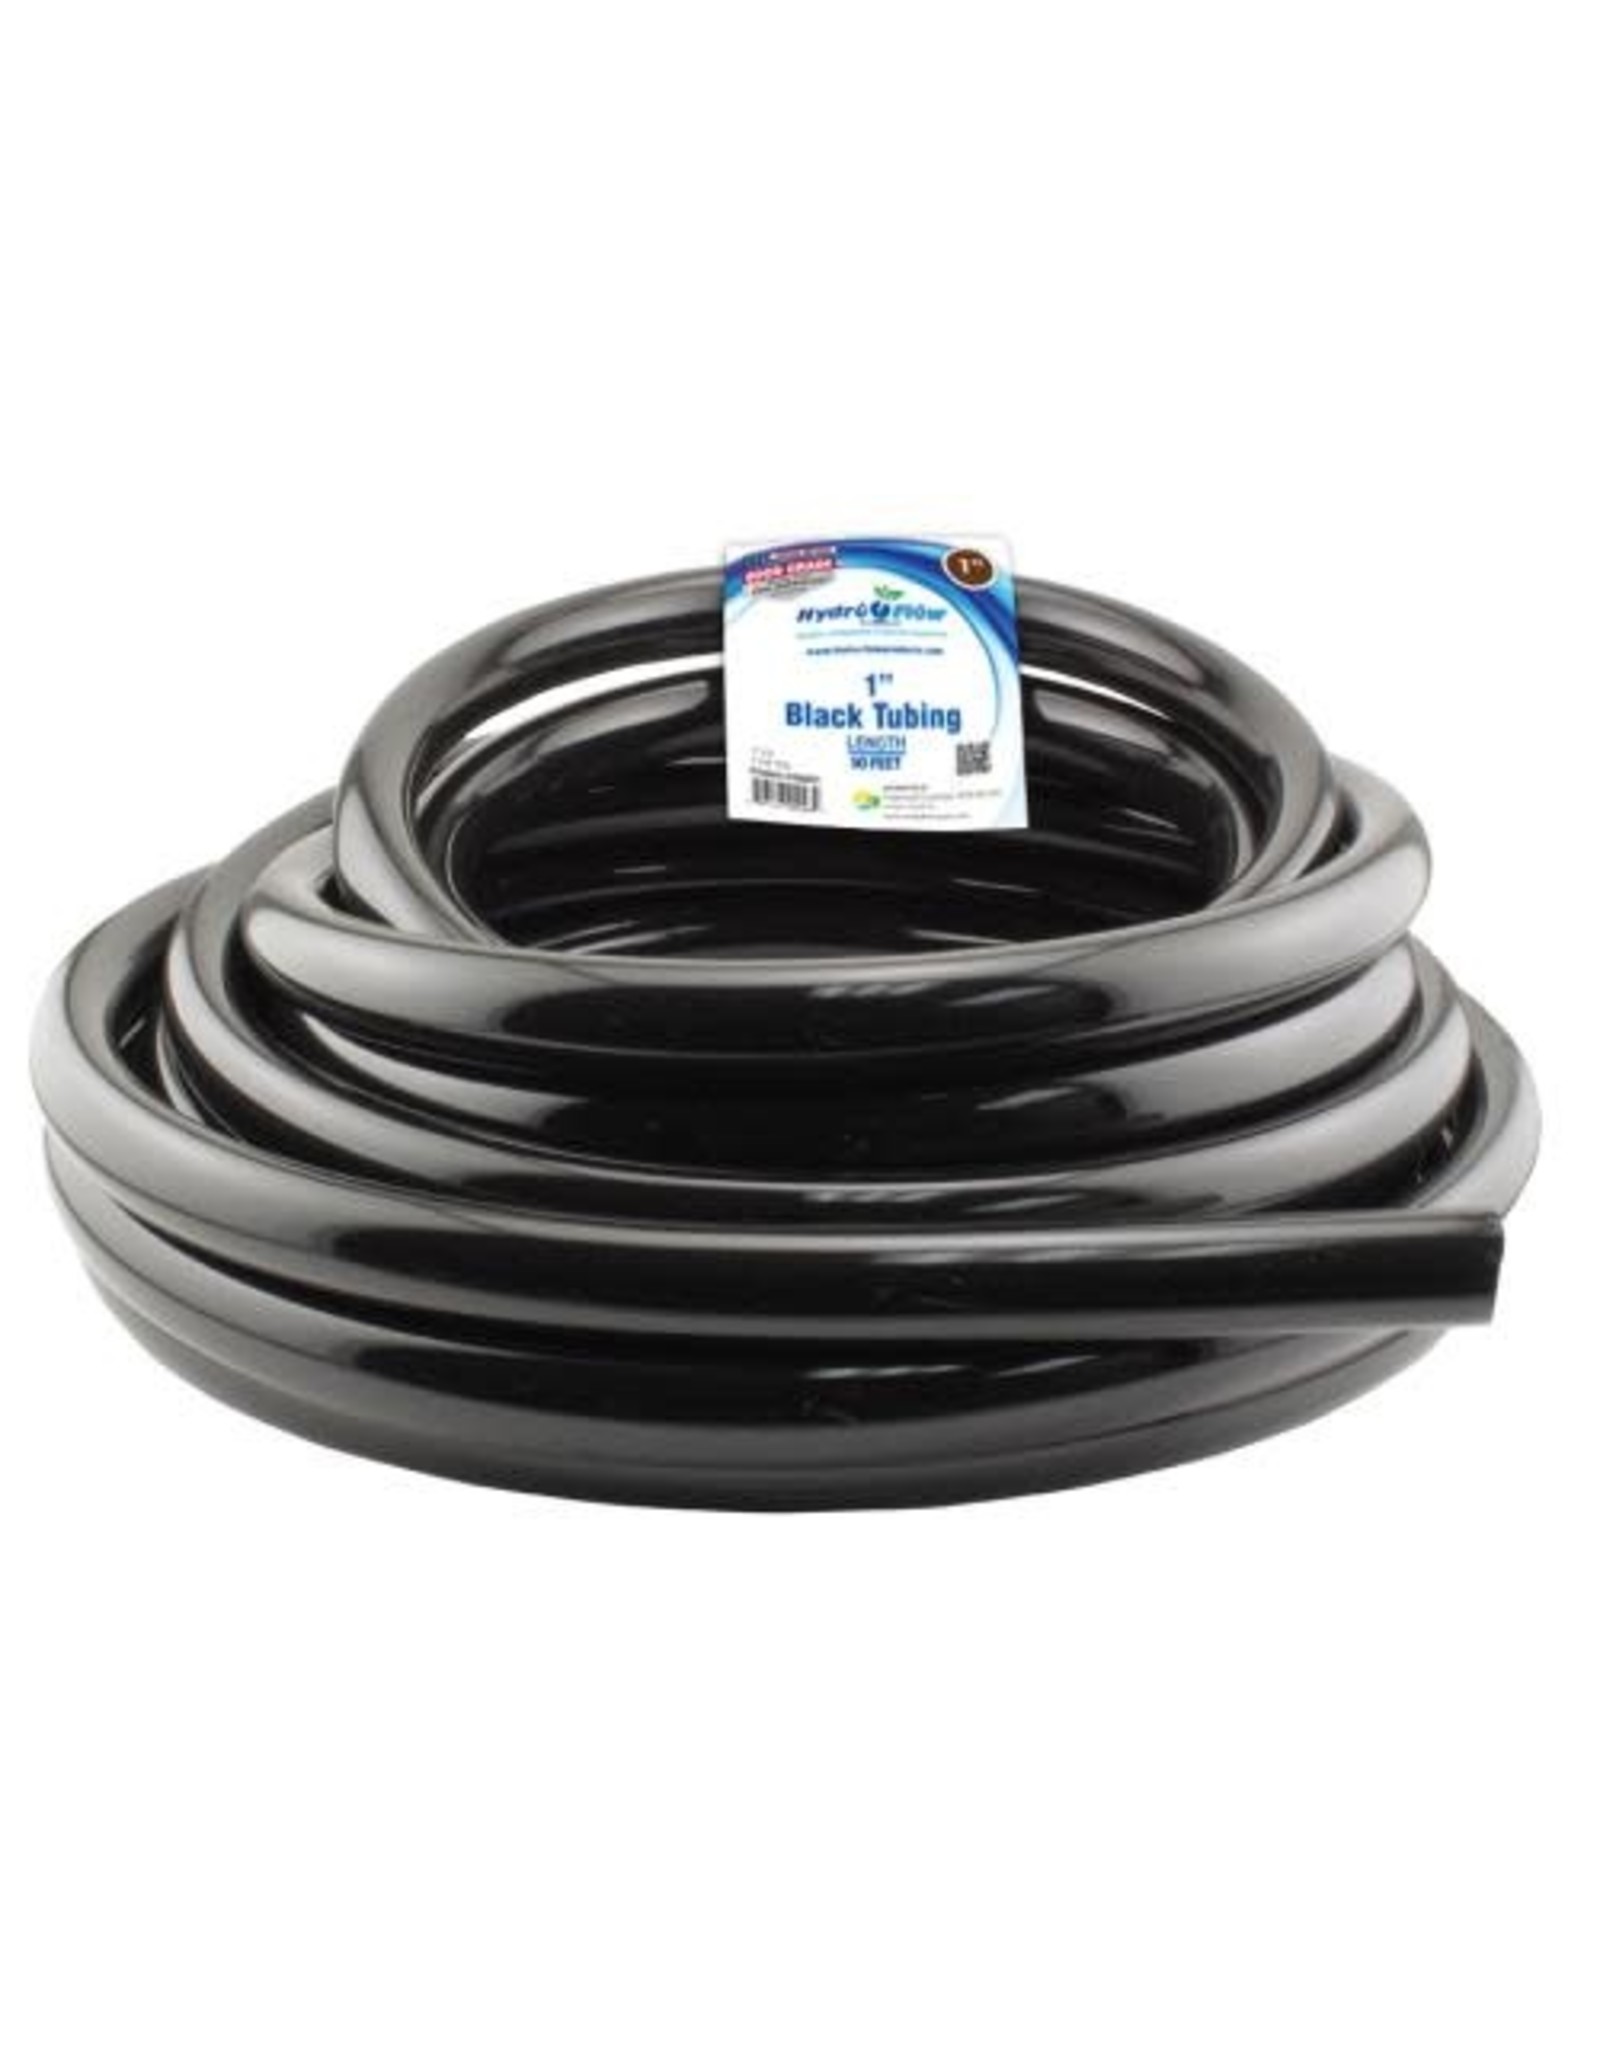 Hydro Flow Hydro Flow Vinyl Tubing Black 1 in ID - 1.25 in OD per foot